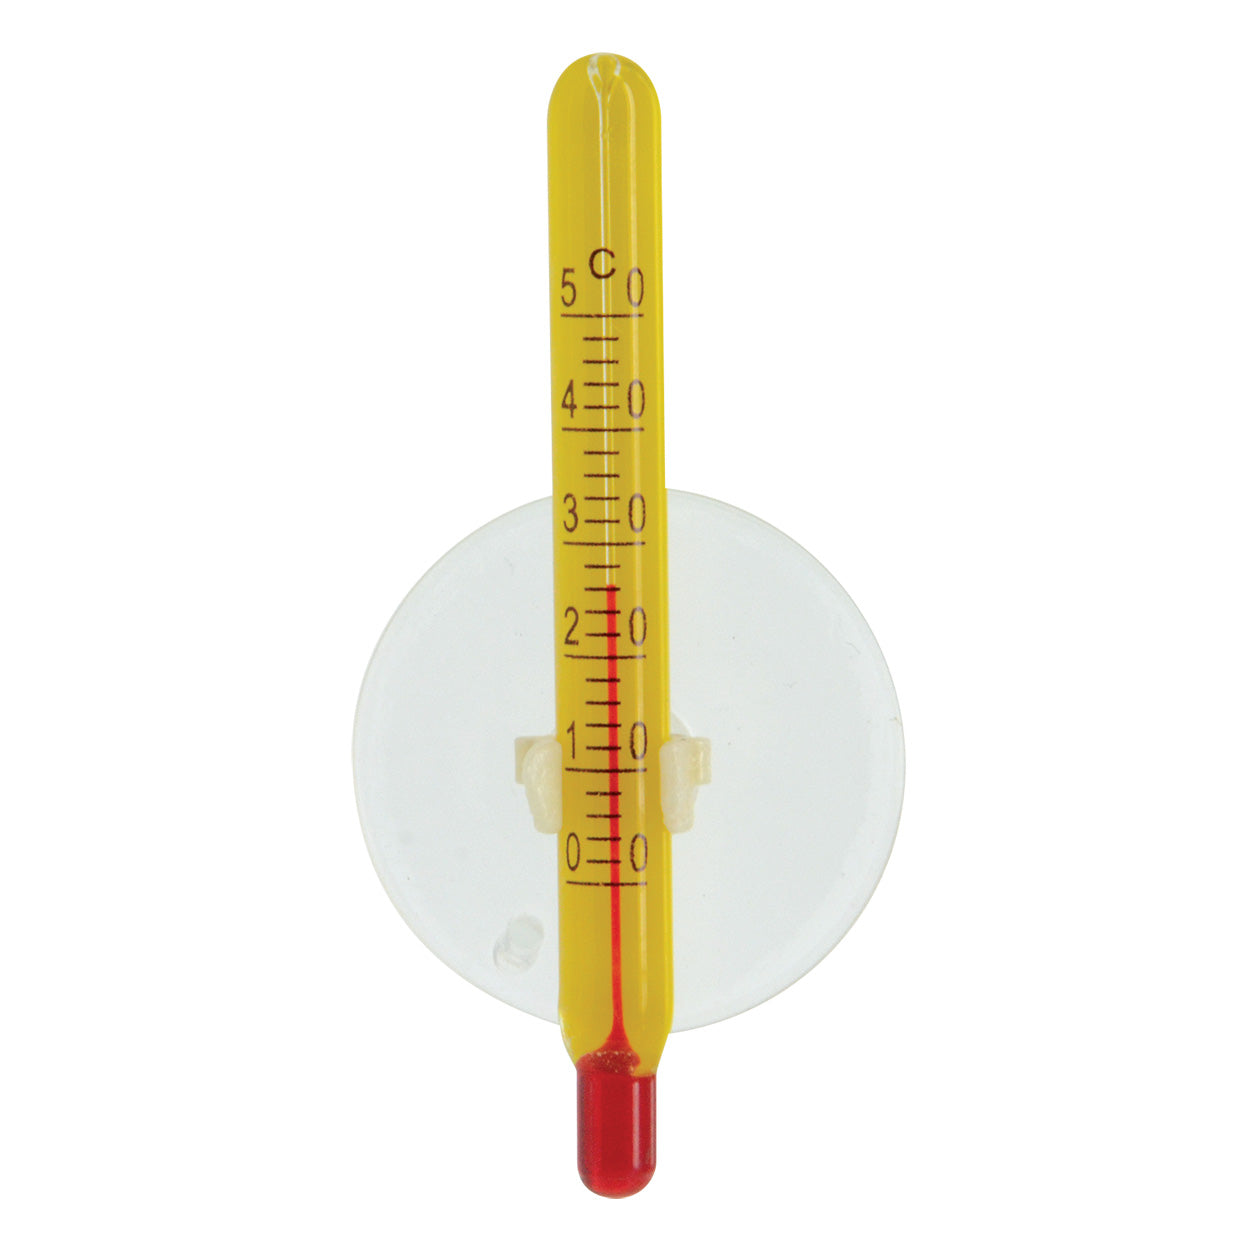 Ista Mini Thermometer